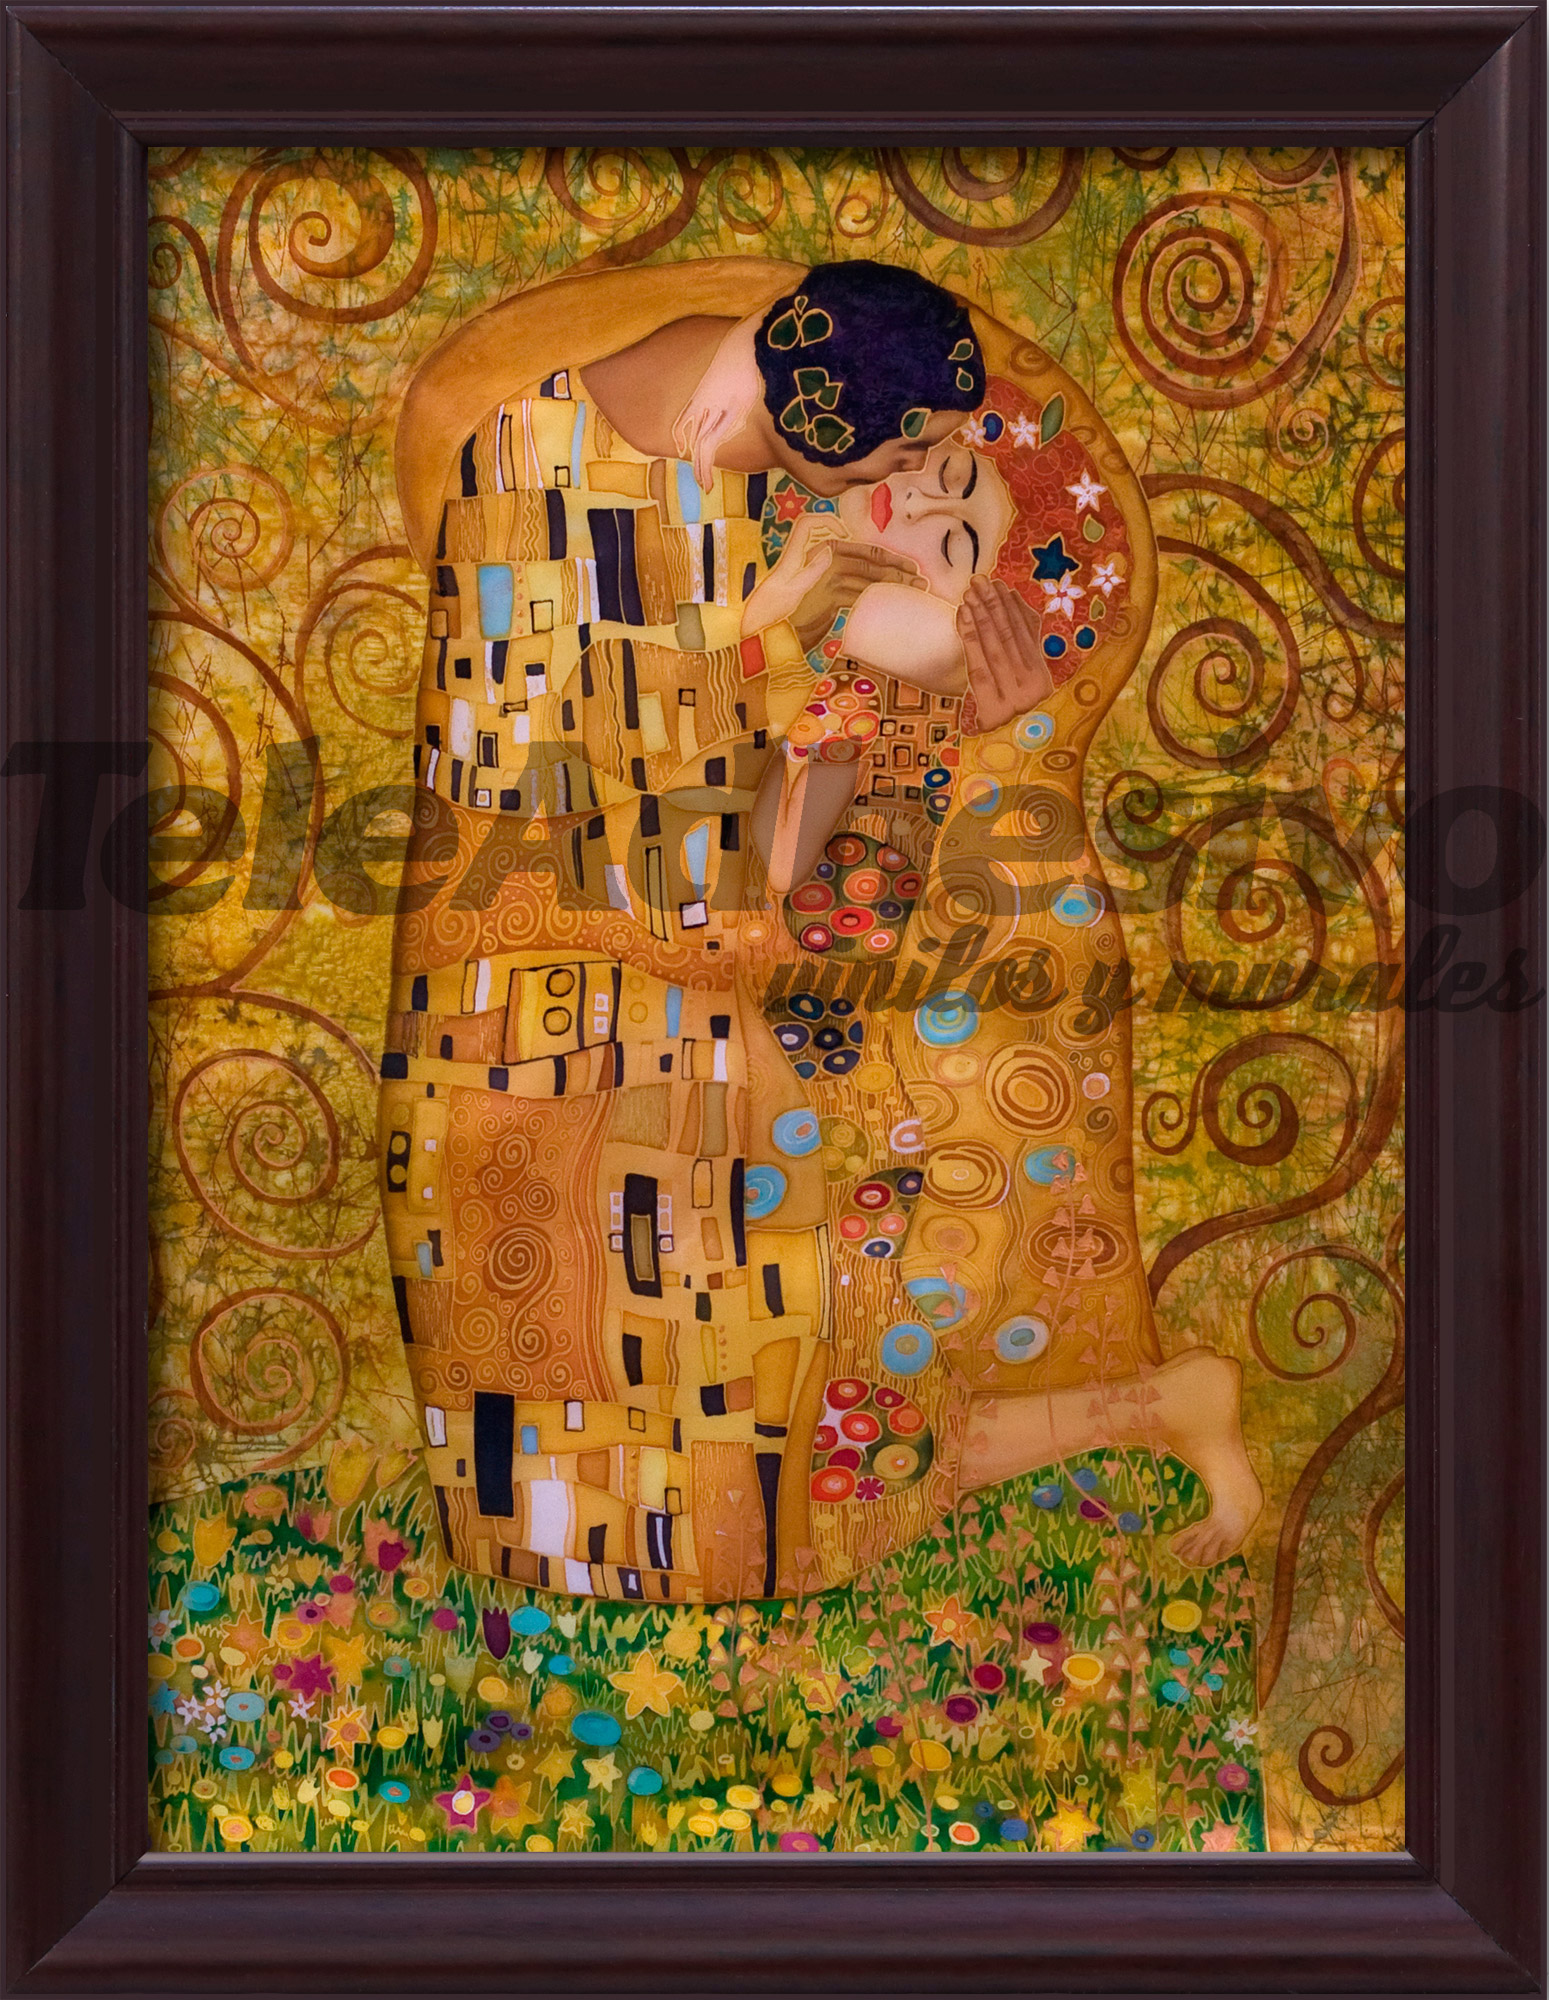 Adesivi Murali: Immagine Bacio di Klimt immagine